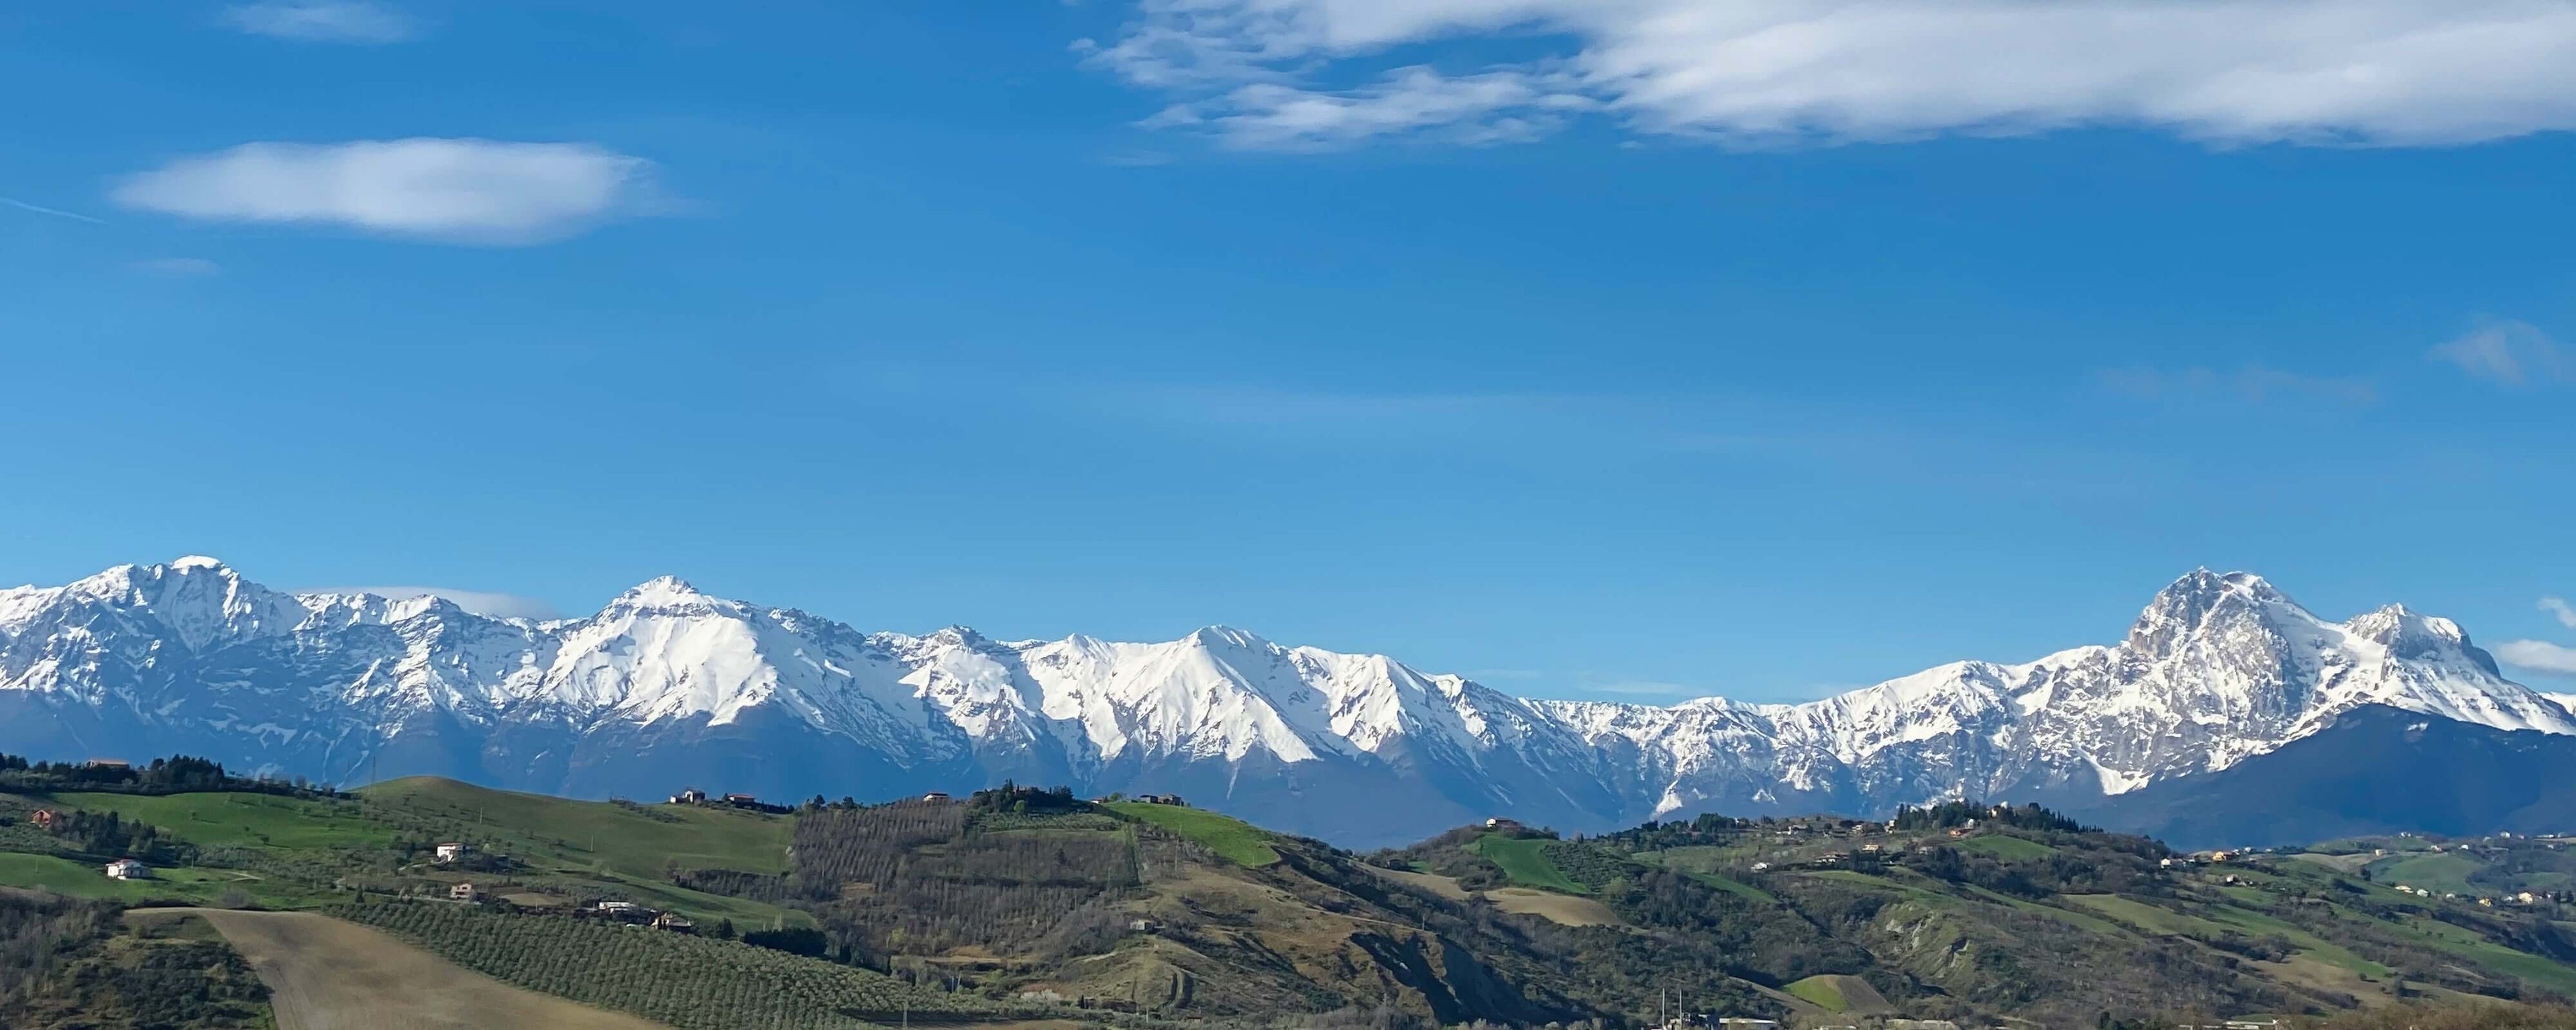 La catena montuosa del Gran Sasso d'Italia vista da Teramo, Italia. Credits: Copyright Stefano Oriani & NepeXTrader, il Trading Zen.